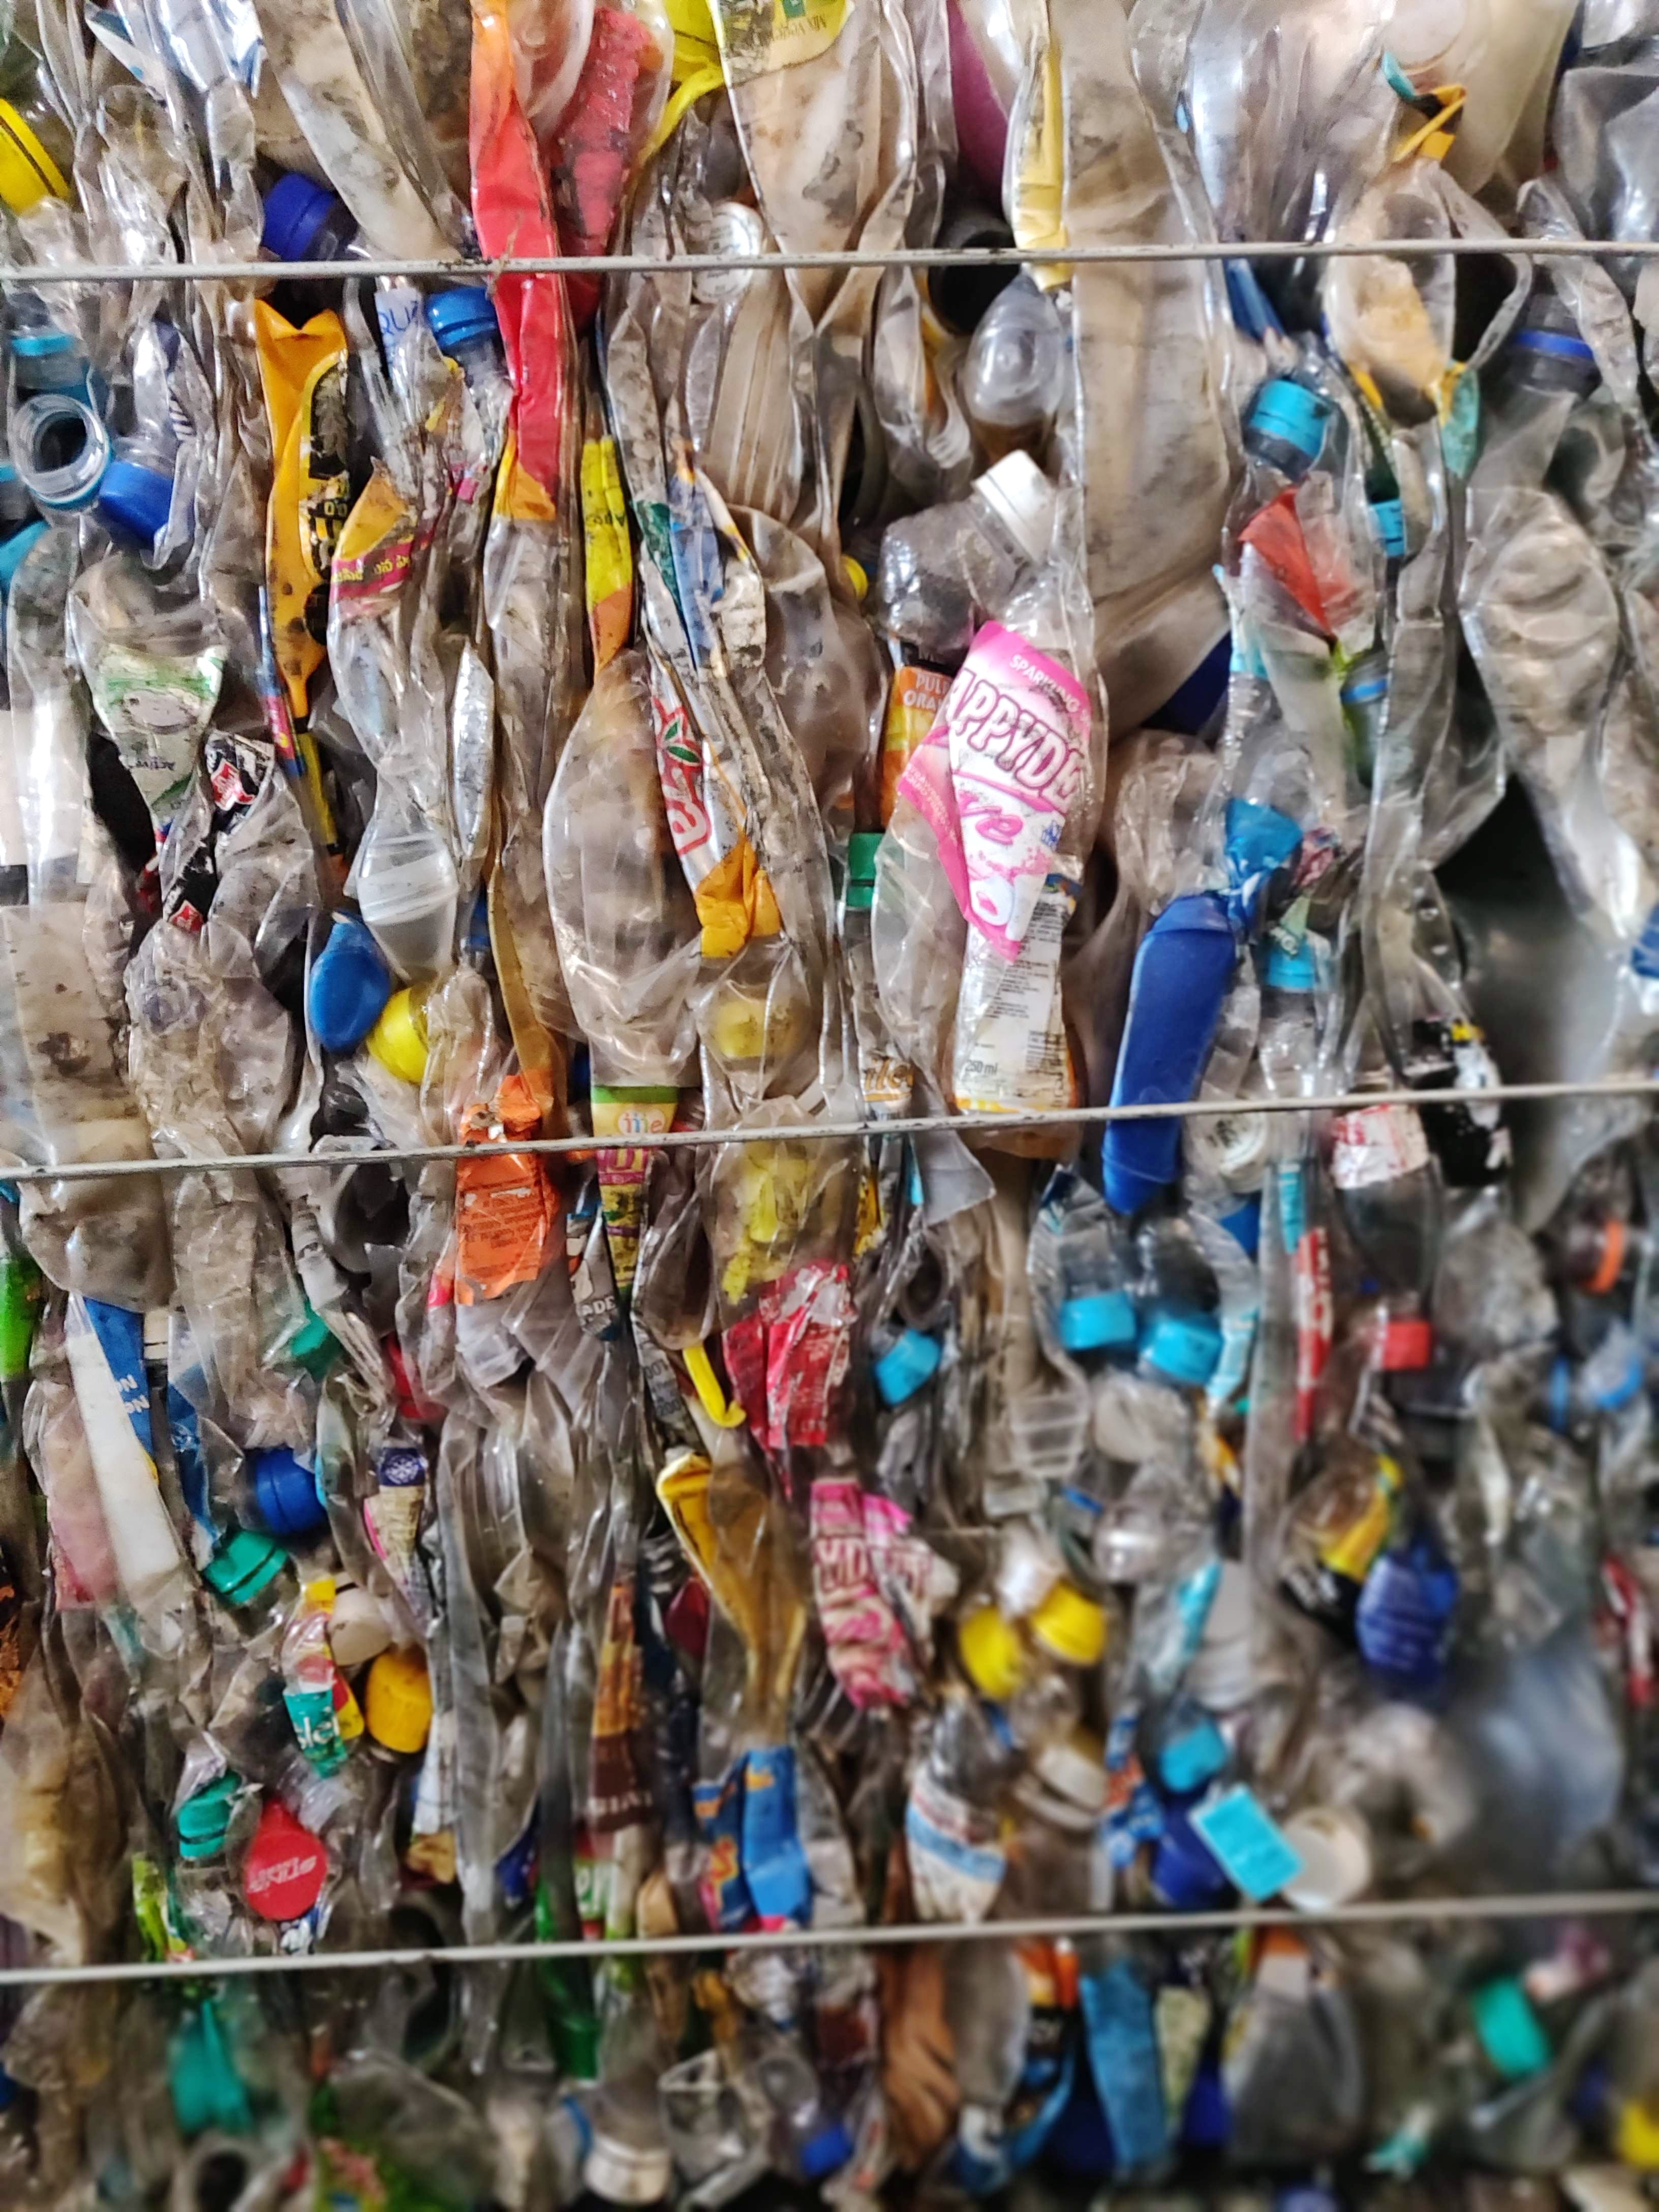 The Body Shop Plastics For Change I LBB, Delhi